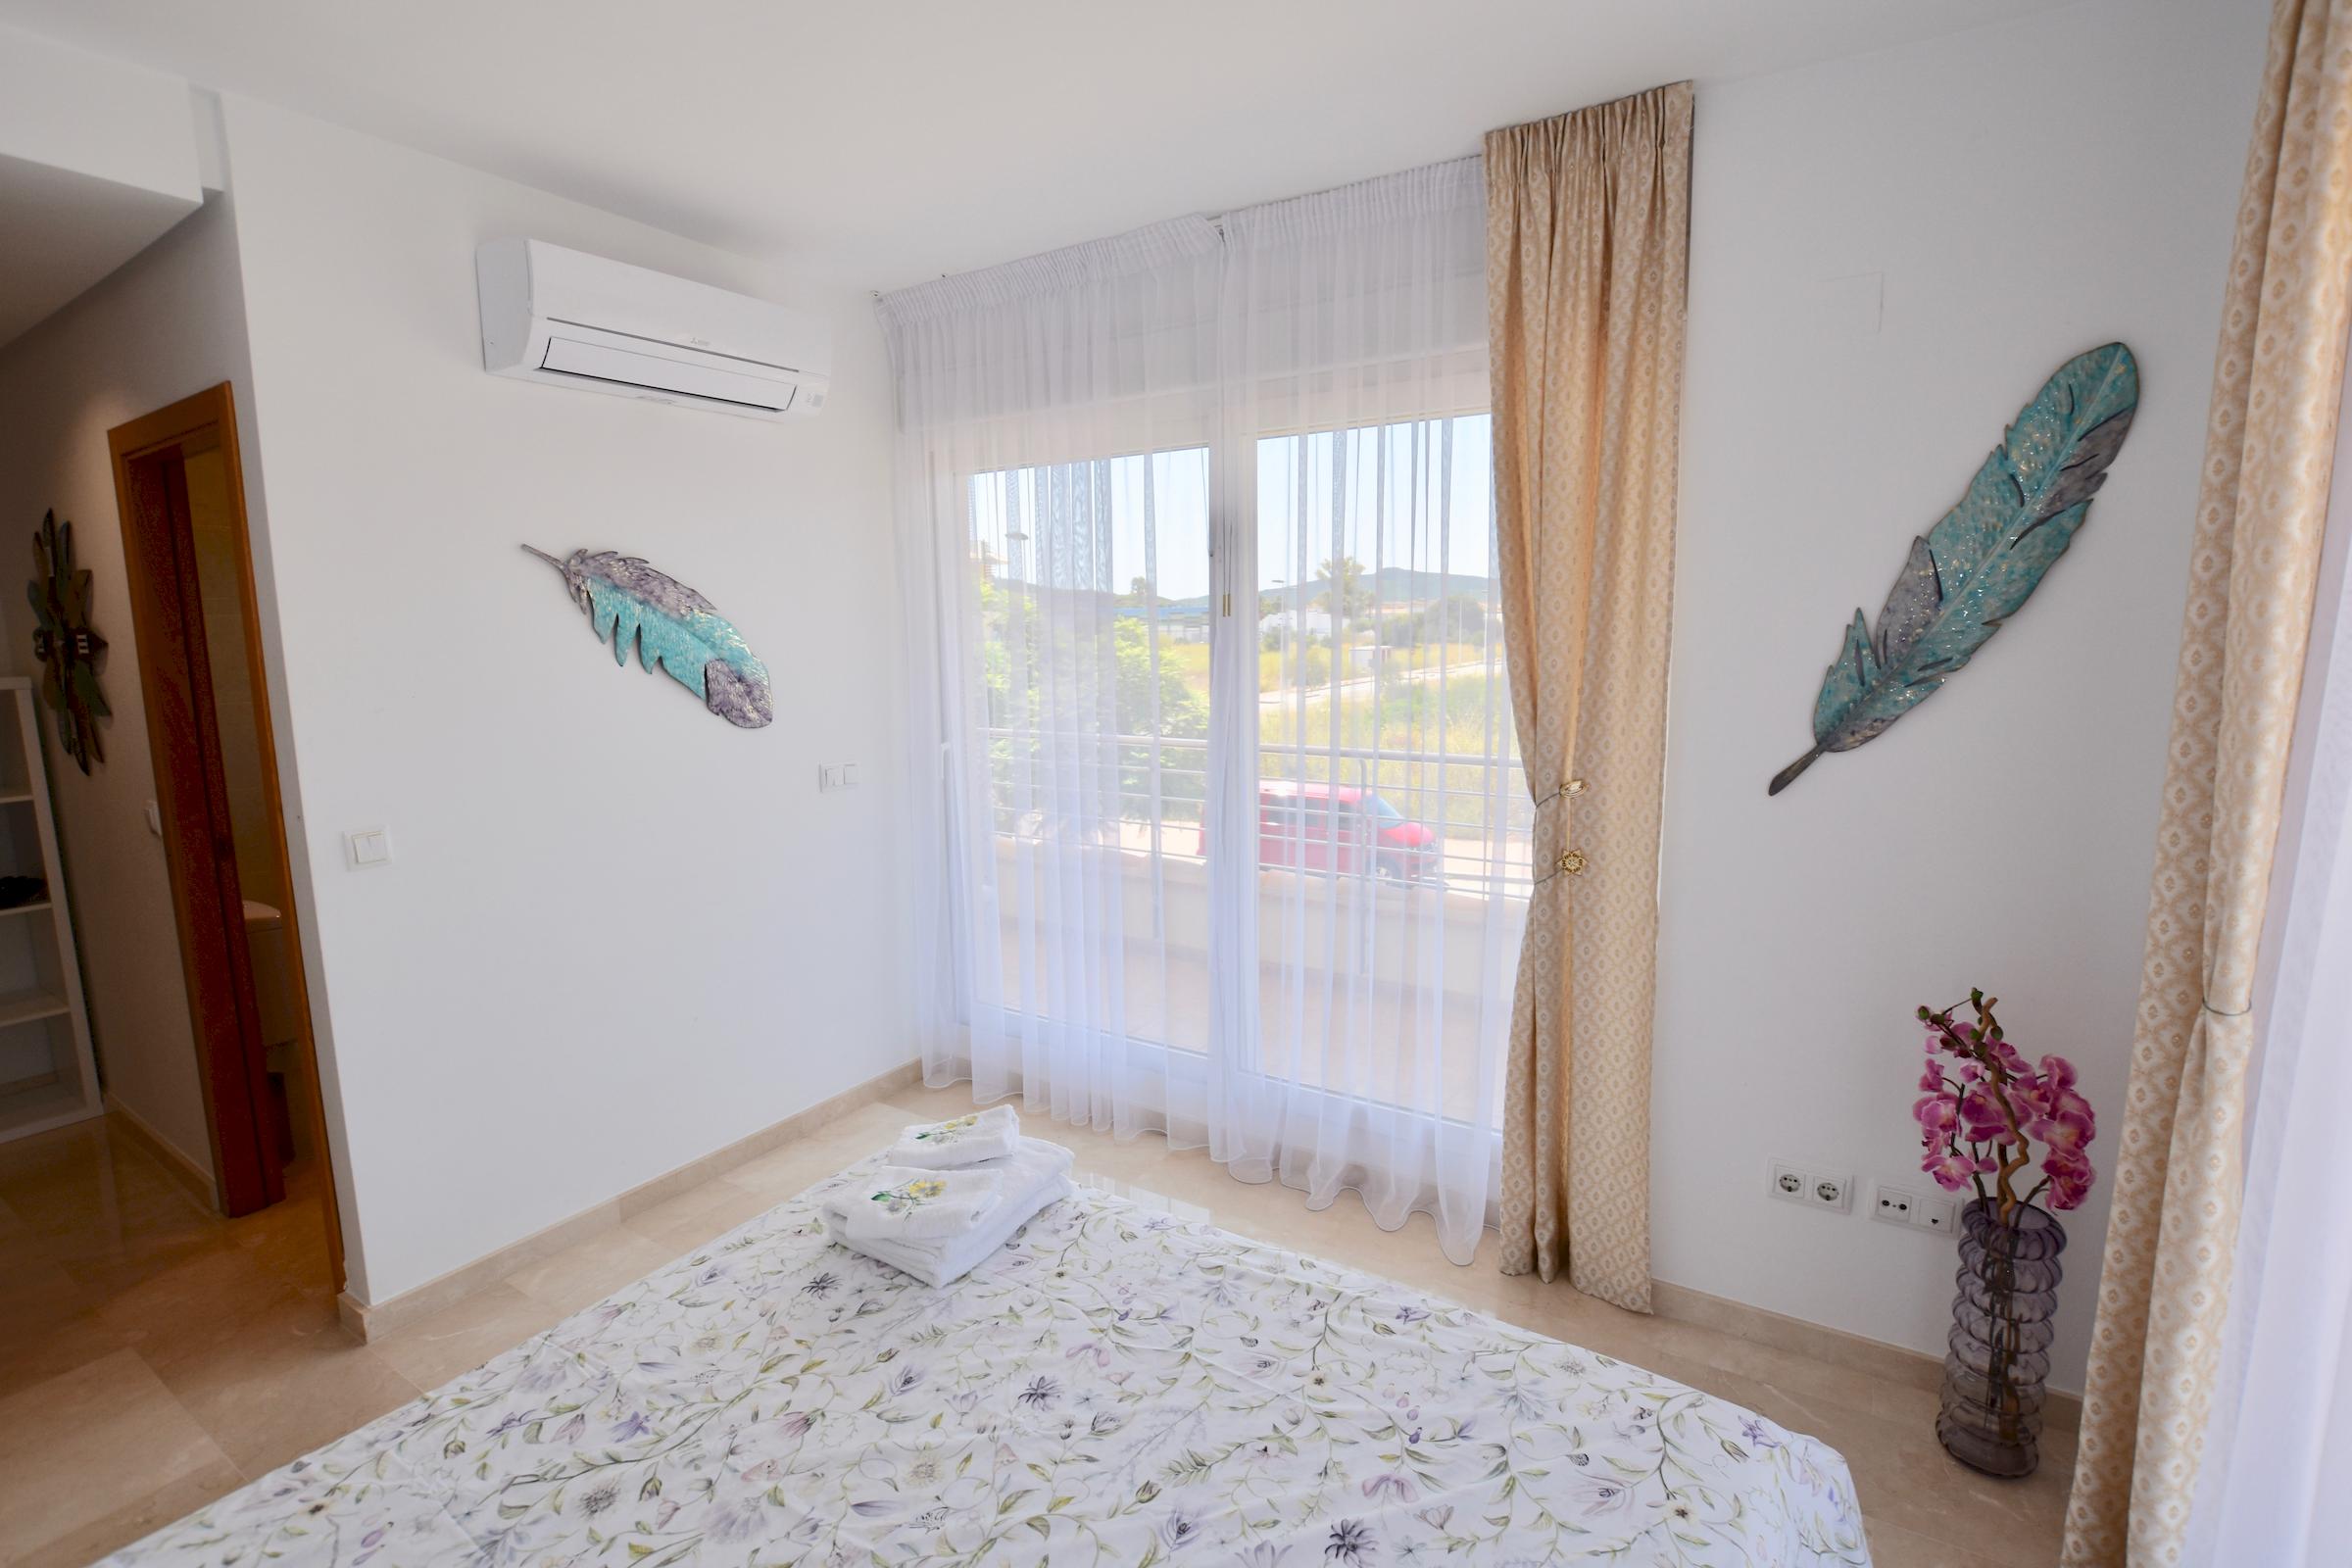 Leichte und geräumige Wohnung für einen hervorragenden Aufenthalt in Javea, Alicante, Costa Blanca